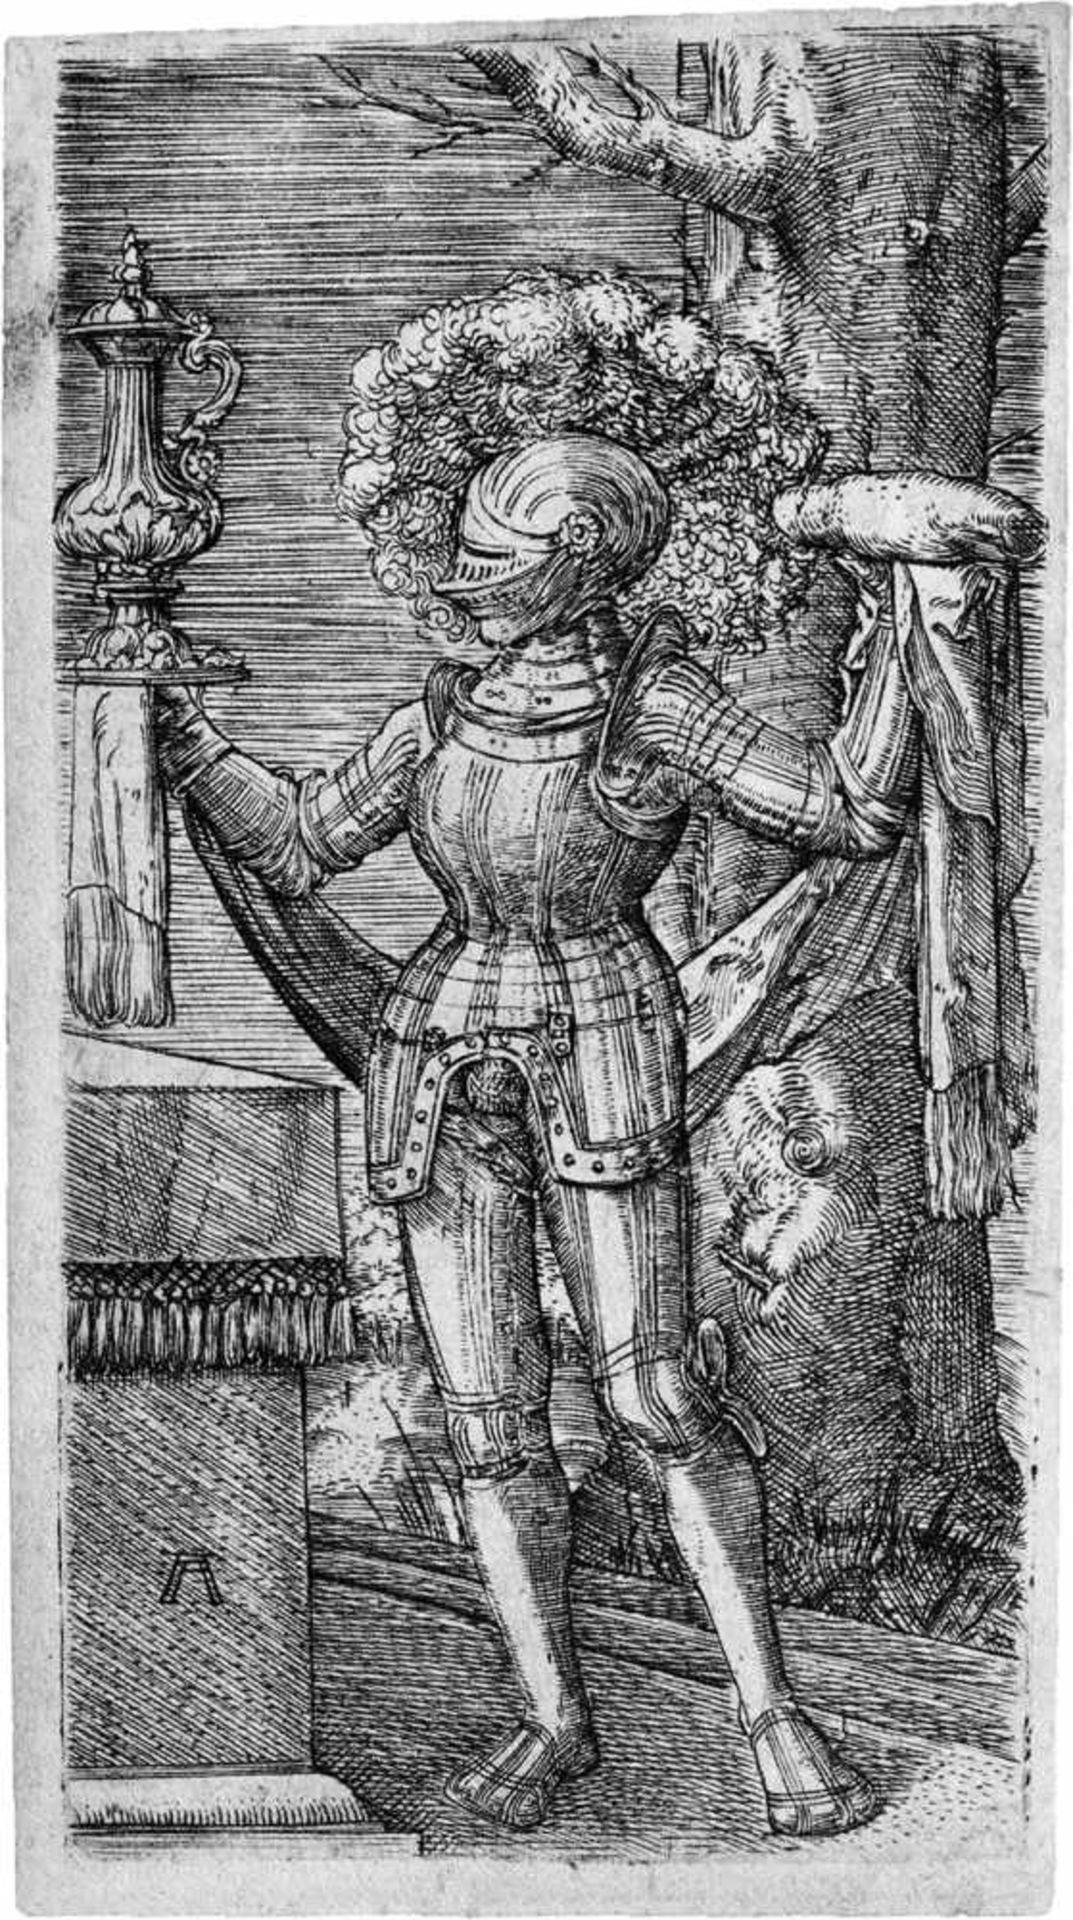 Altdorfer, Albrecht: Der RitterDer Ritter. Kupferstich. 8,8 x 4,7 cm. B. 50, Mielke (New